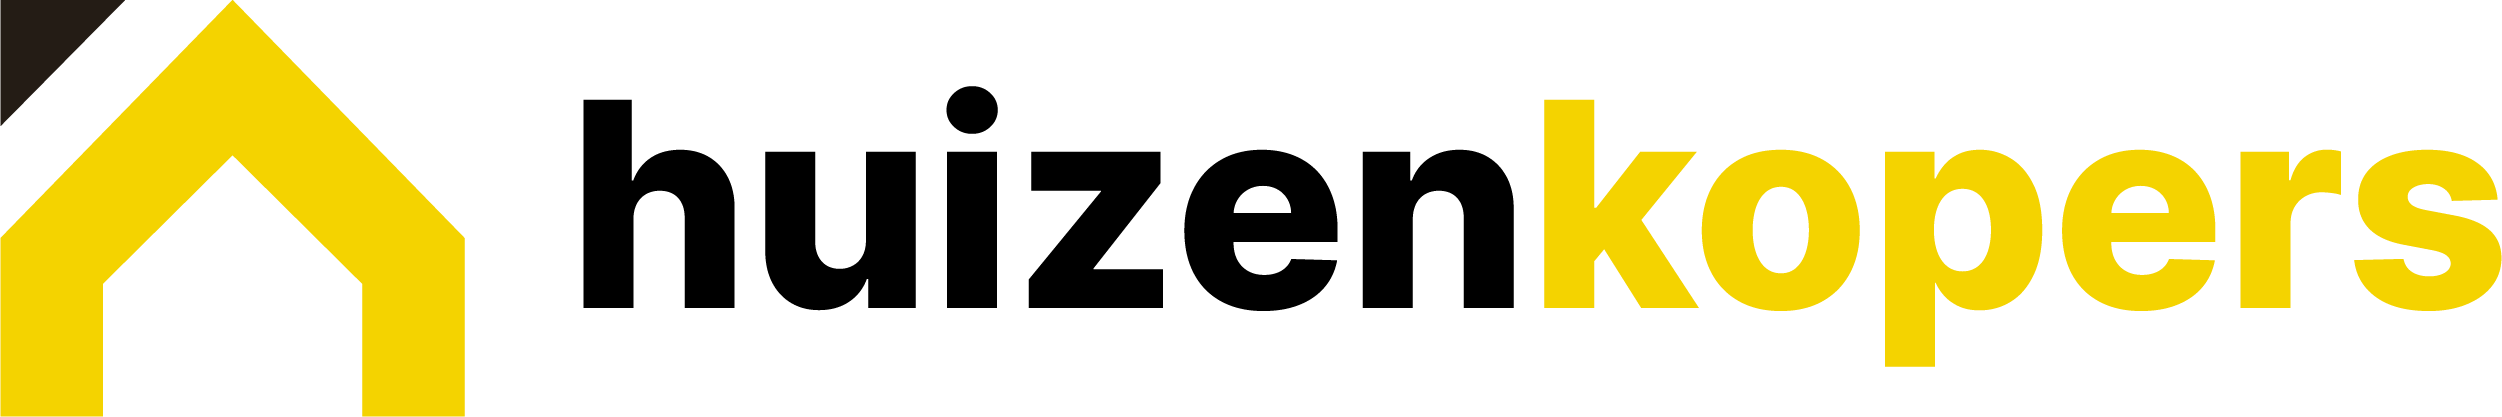 Huizenkopers logo